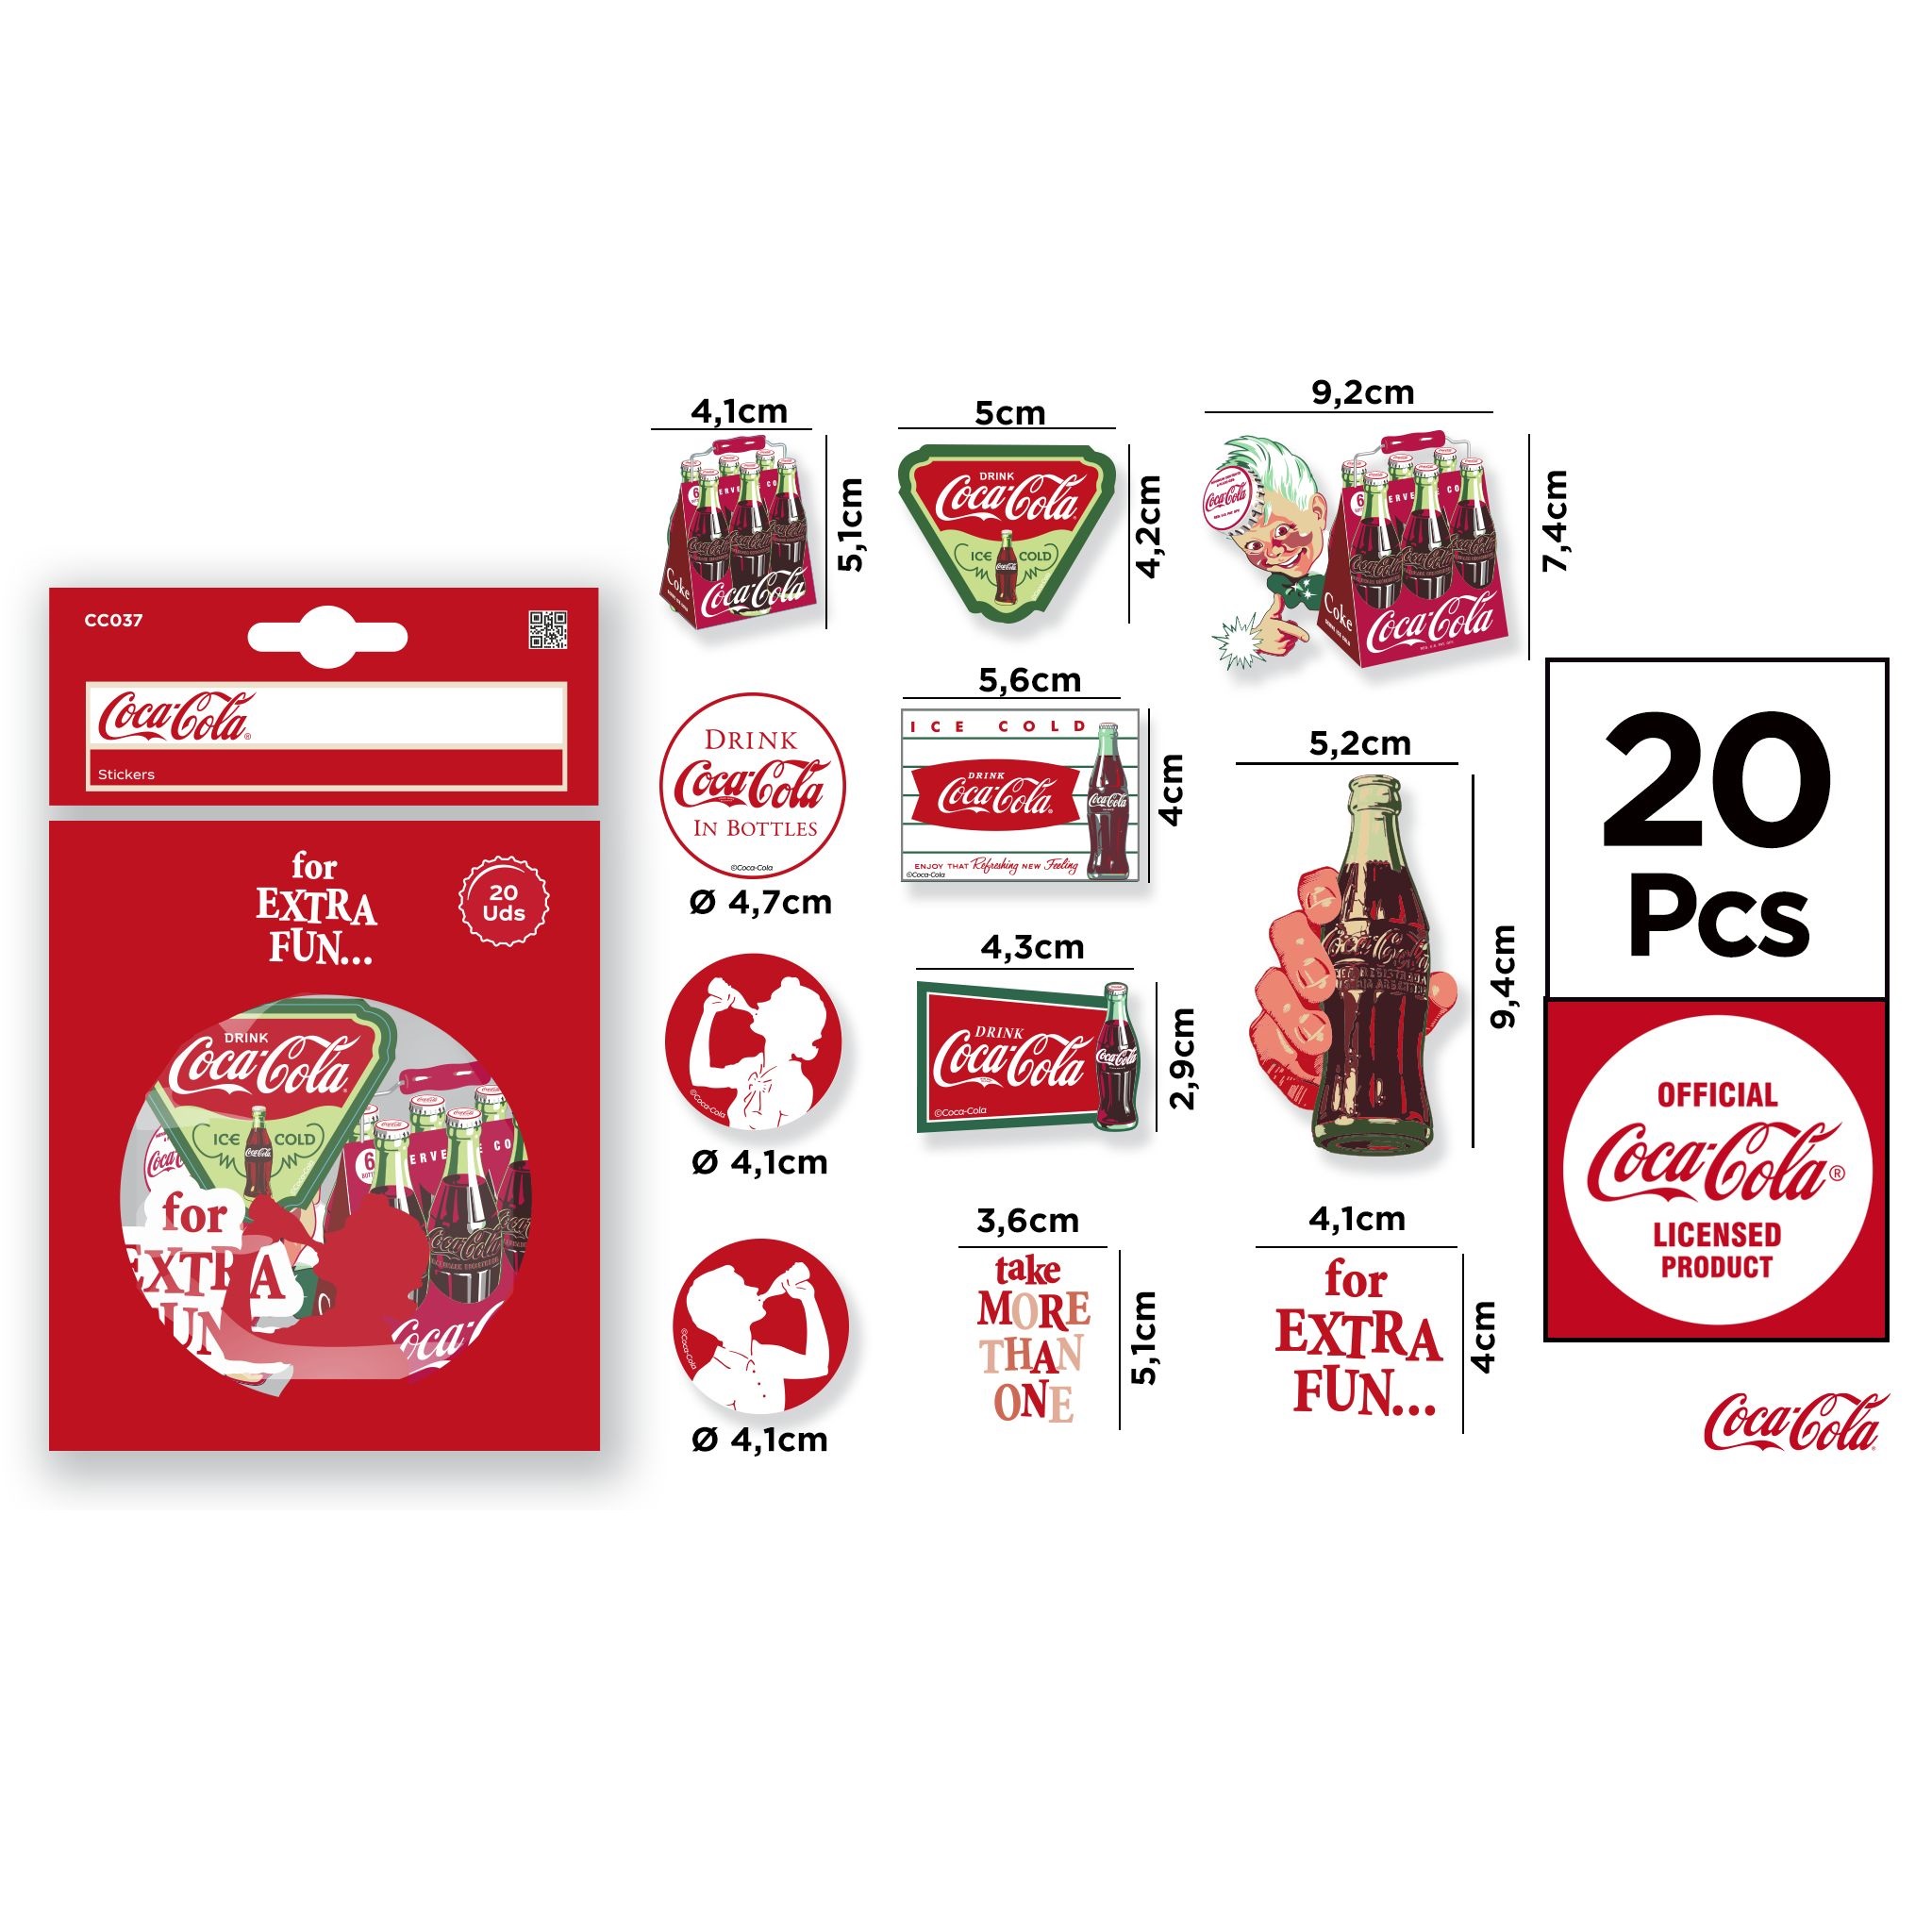 CC037 Coca-Cola Stickers Creative Cup Stickers